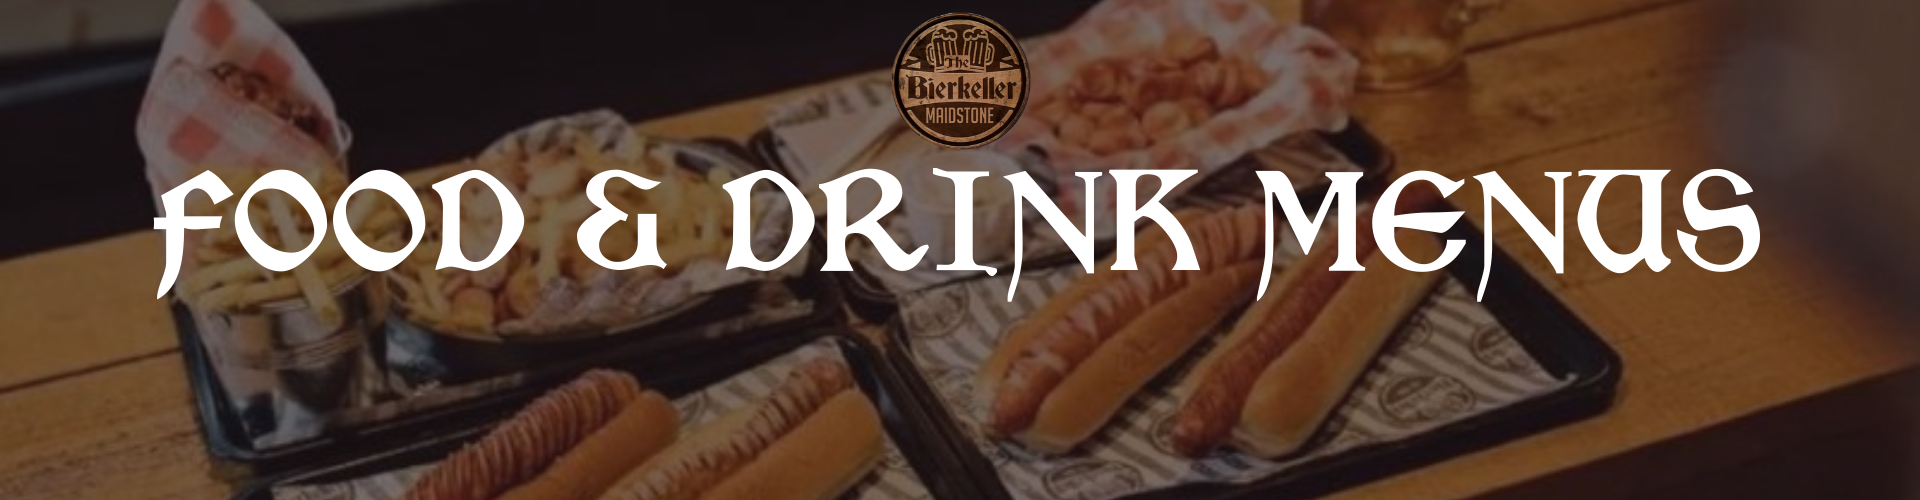 Food and drink menus at Bierkeller